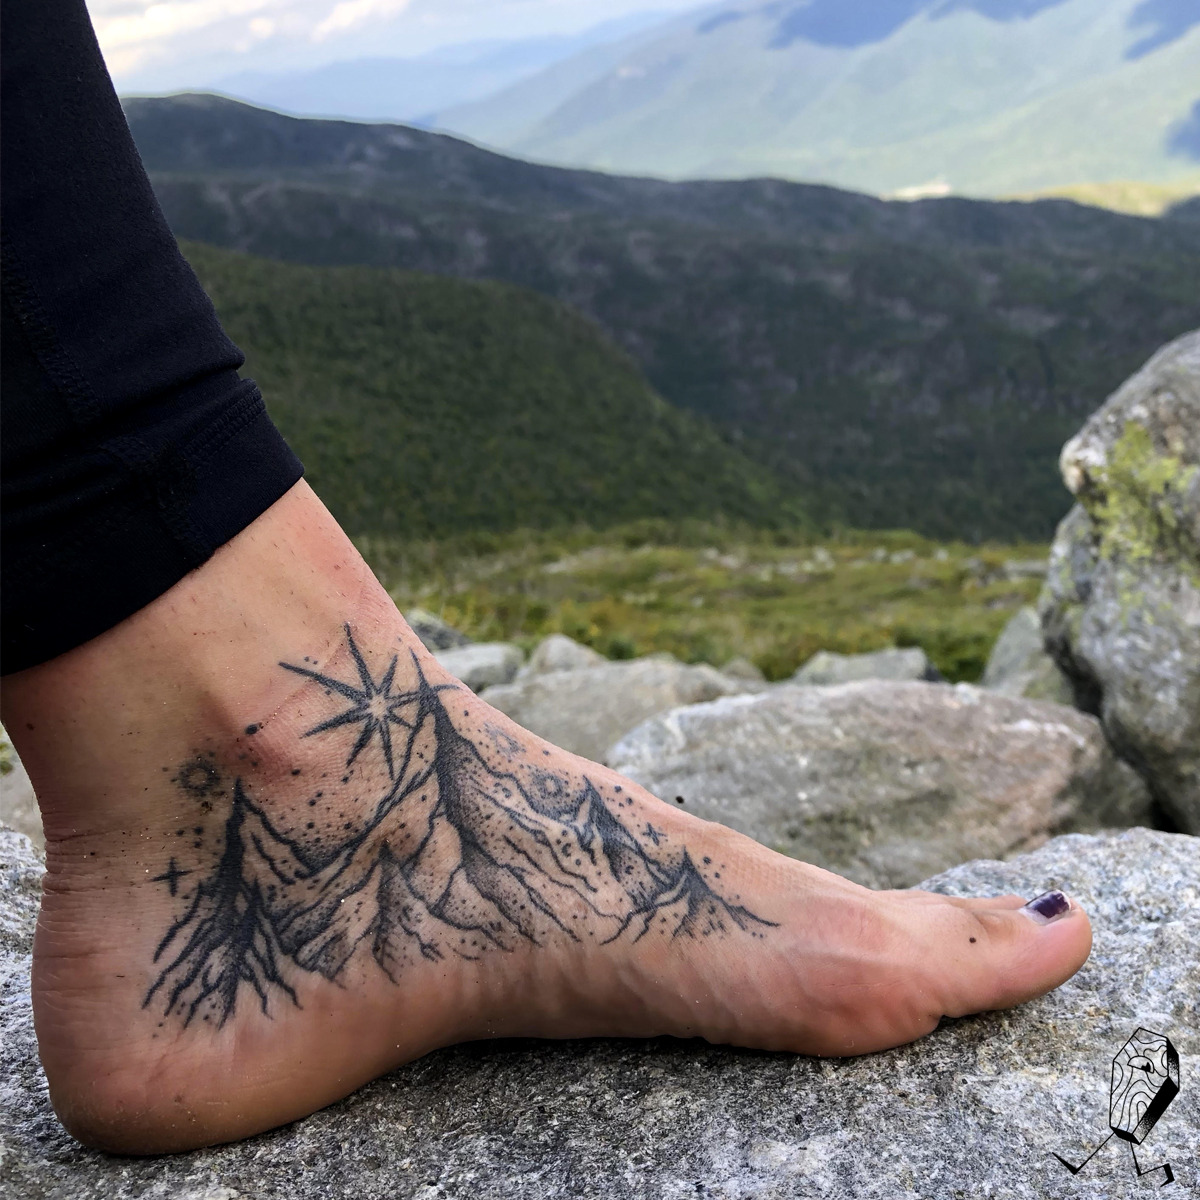 Mountains on foot tattoo Body art  Tattoo Ideas For Girls  Body art  Pierced  Inked Tattoo Ideas